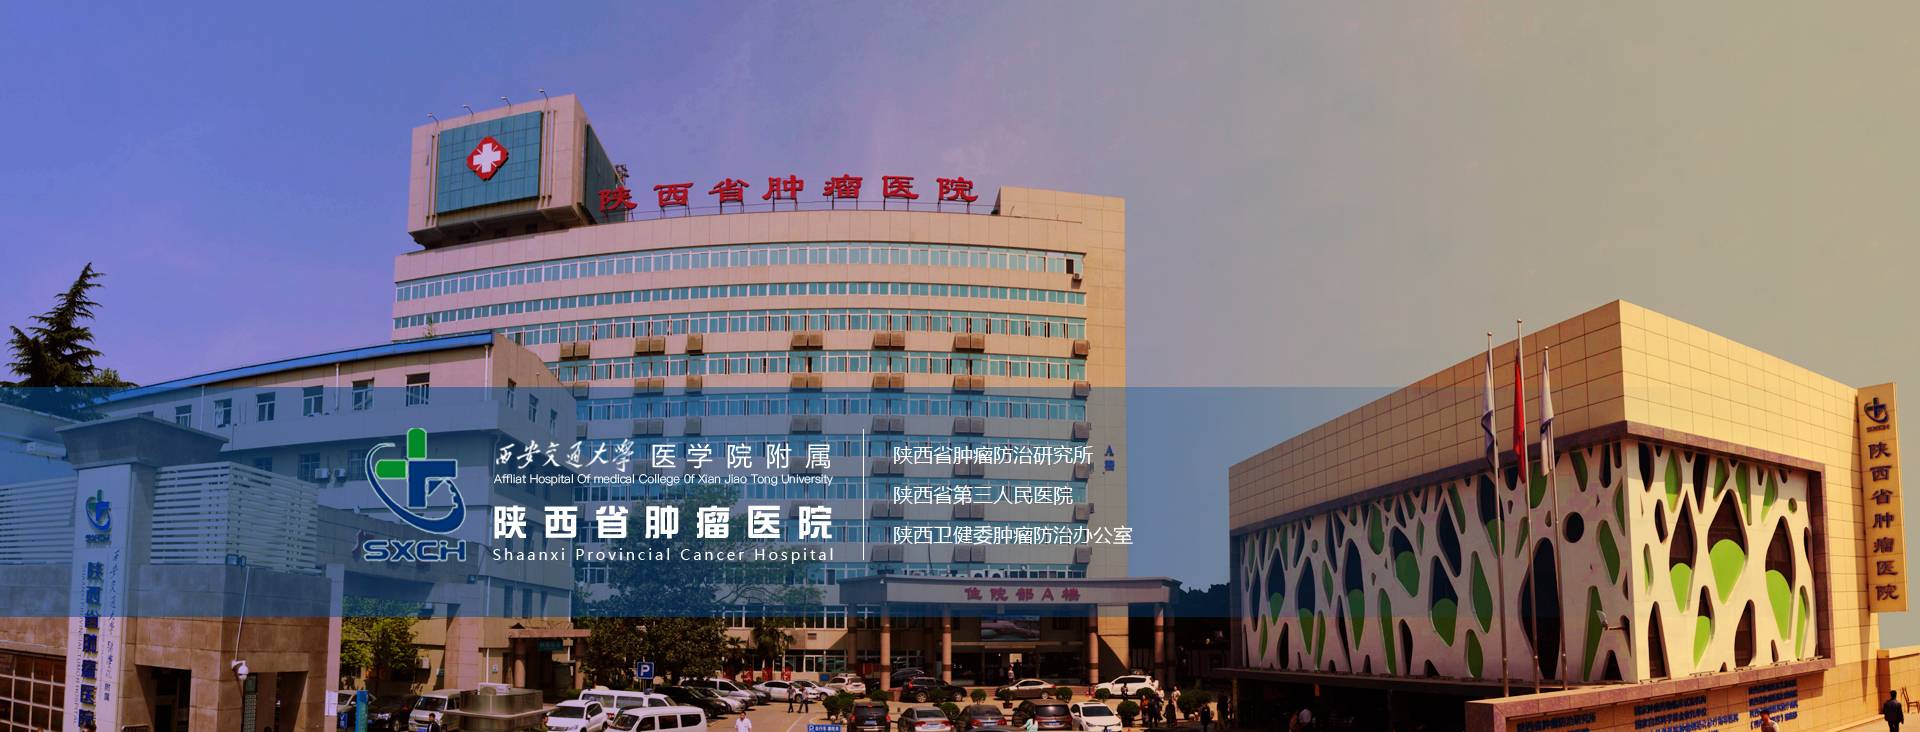 陕西省肿瘤医院单位图片